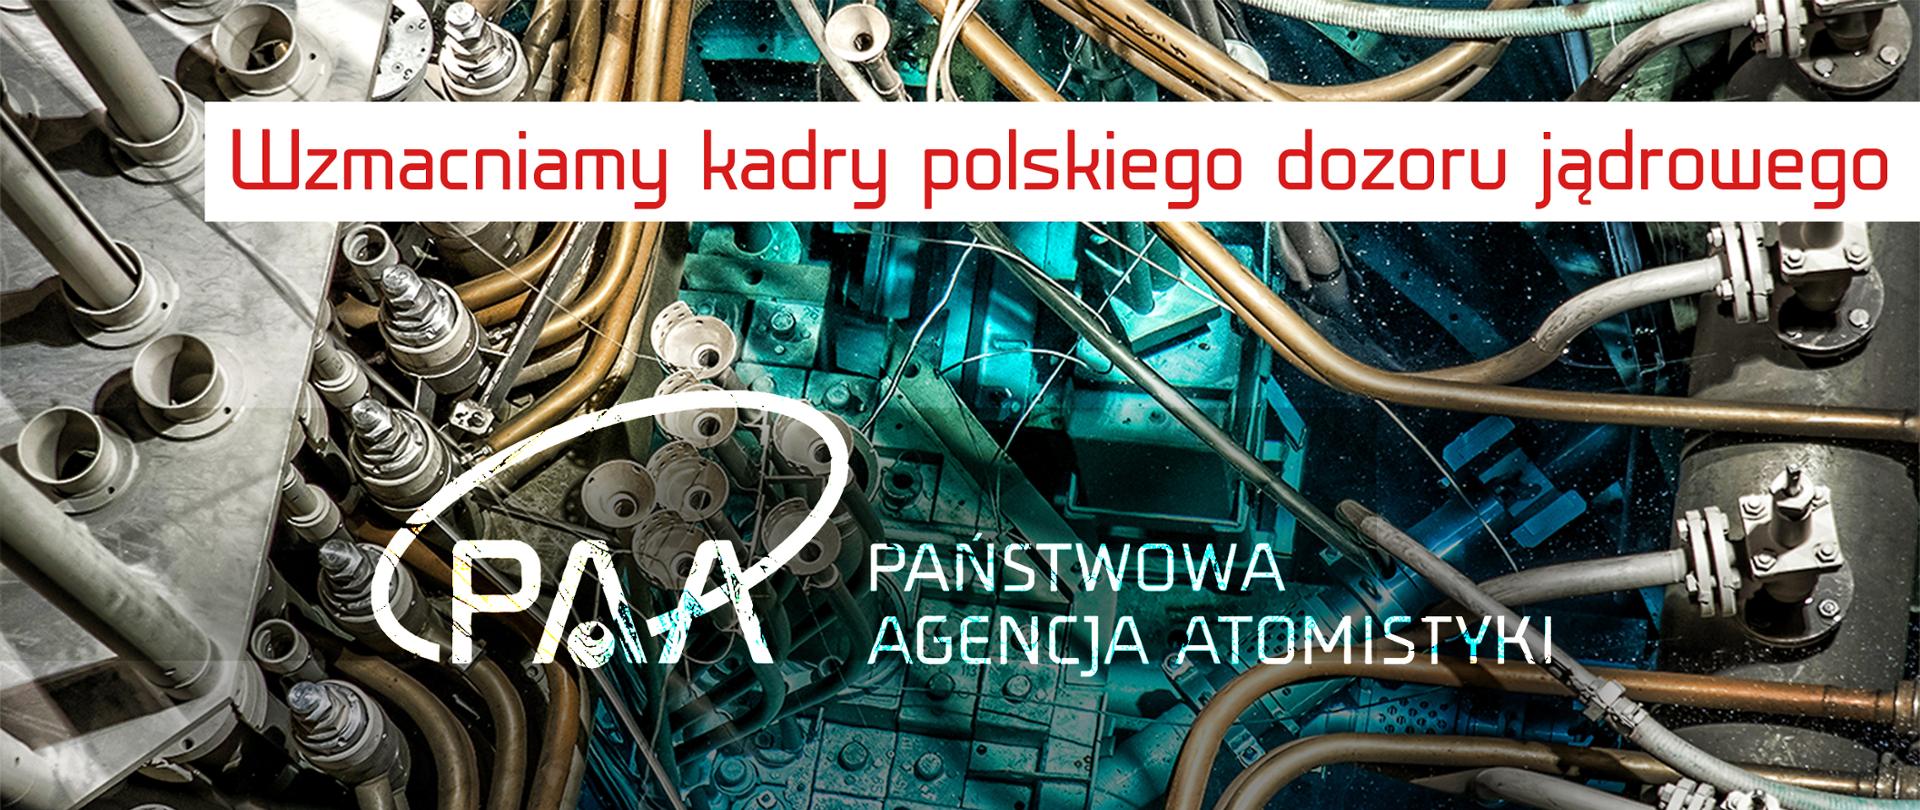 Promieniowanie Czerenkowa w reaktorze jądrowym. Na białym tle czerwony napis: wzmacniamy kadry polskiego dozoru jądrowego.